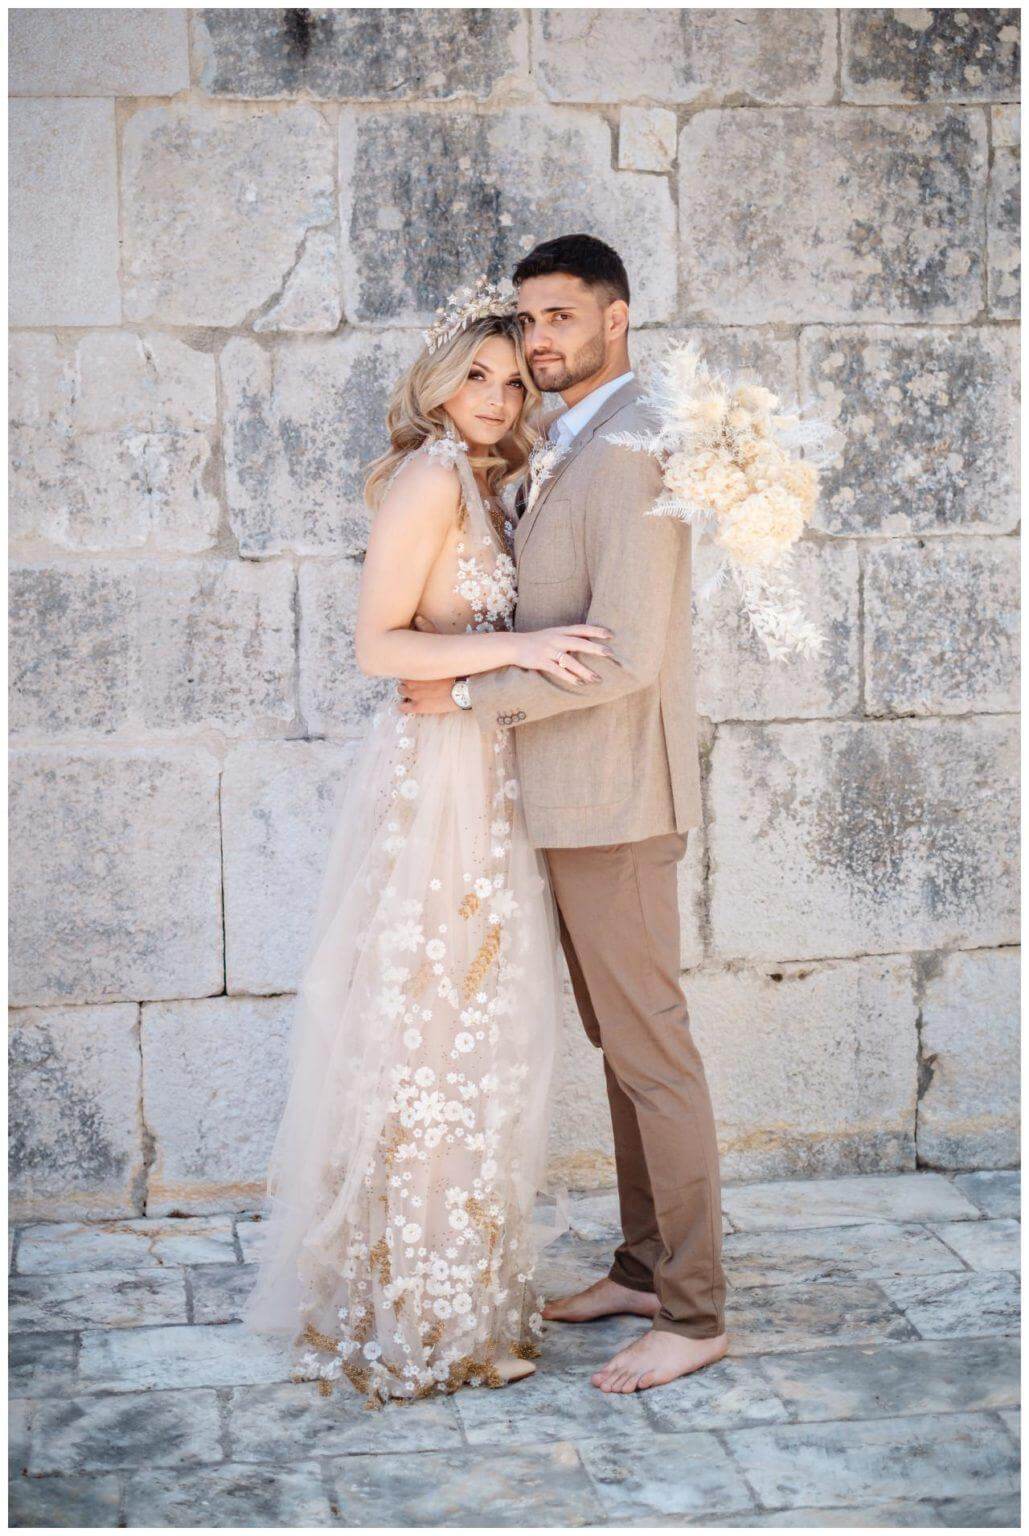 Natürliche Hochzeit in Kroatien Paarshooting Braut und Bräutigam